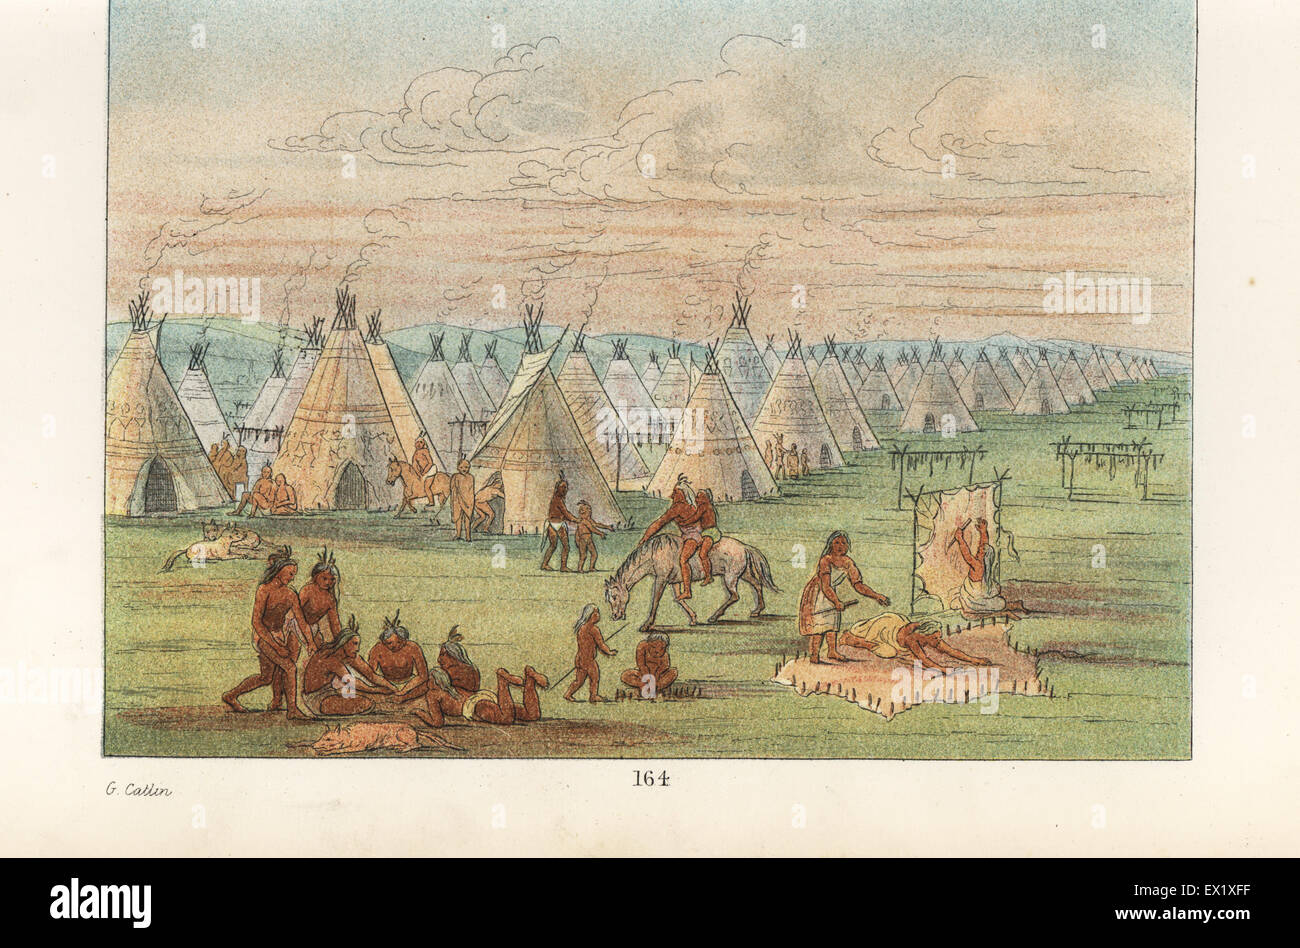 George Catlin (American, 1794-1872) Blackfoot indian Group